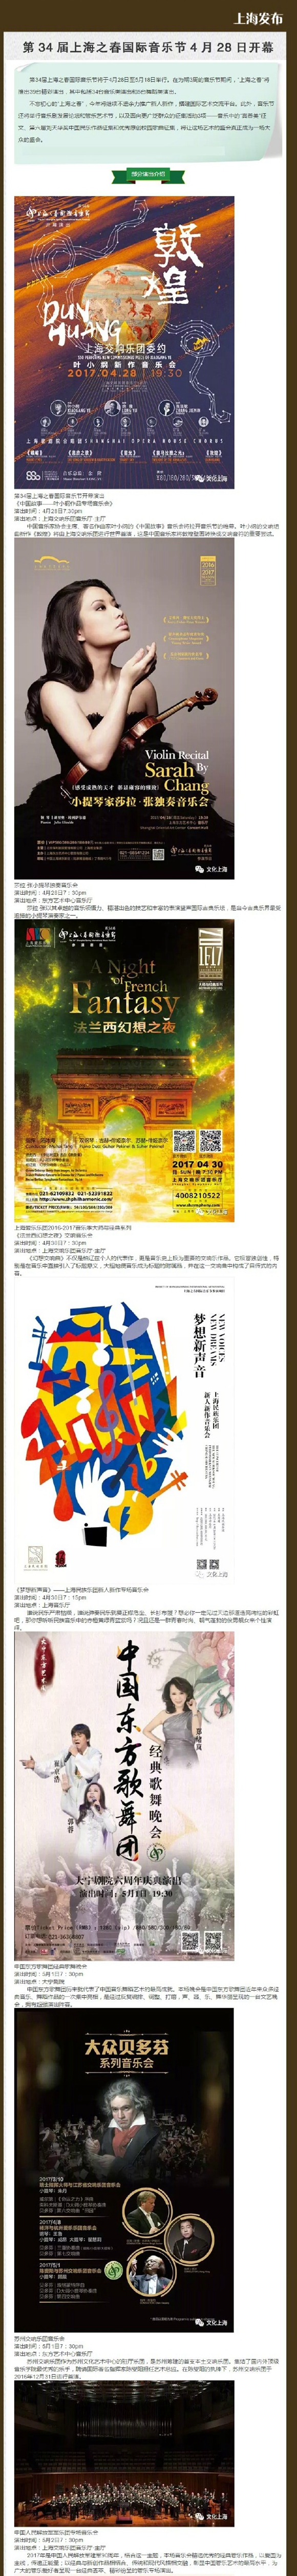 第34屆上海之春國際音樂節